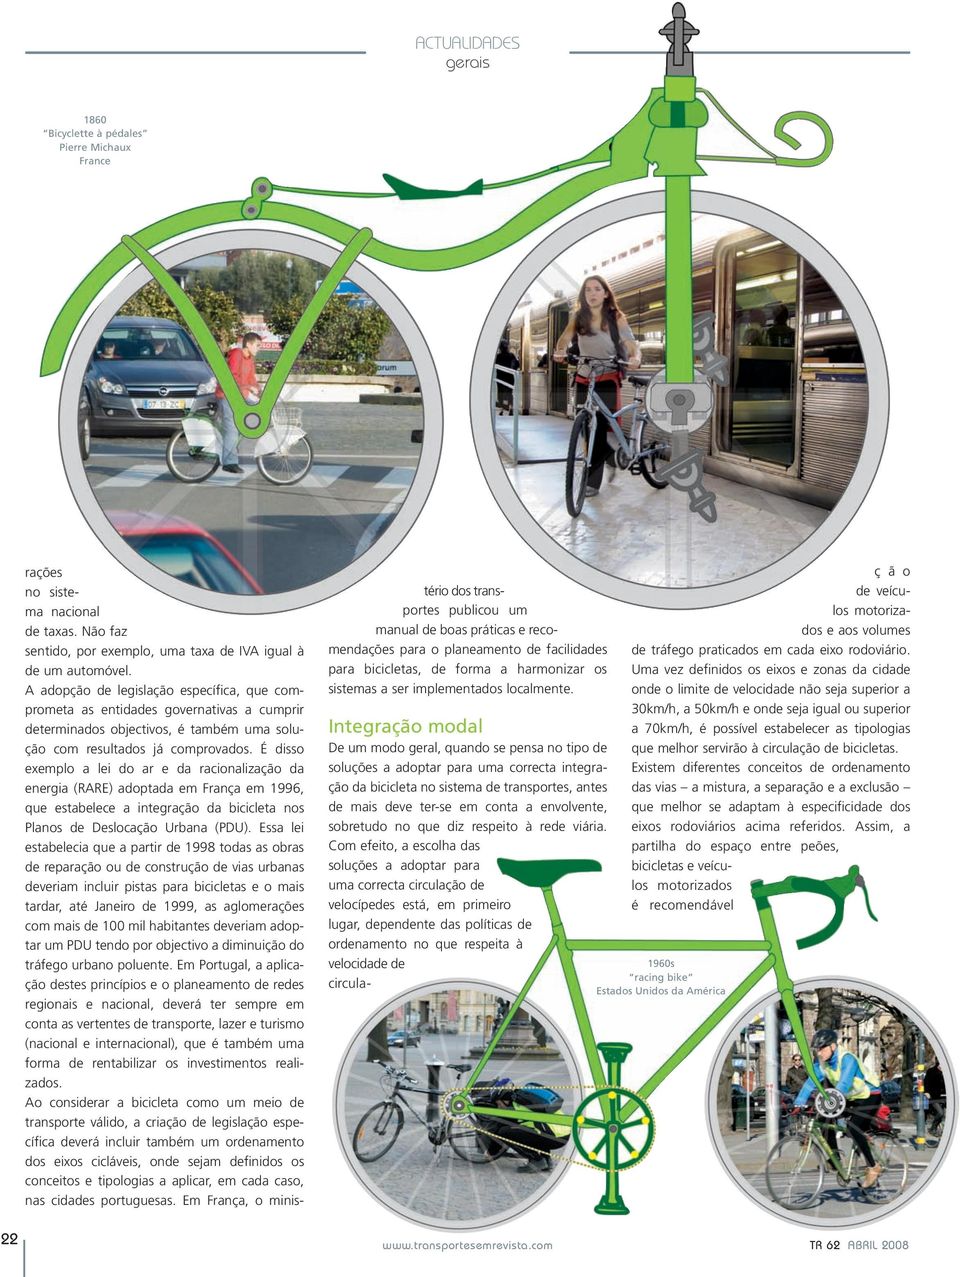 É disso exemplo a lei do ar e da racionalização da energia (RARE) adoptada em França em 1996, que estabelece a integração da bicicleta nos Planos de Deslocação Urbana (PDU).